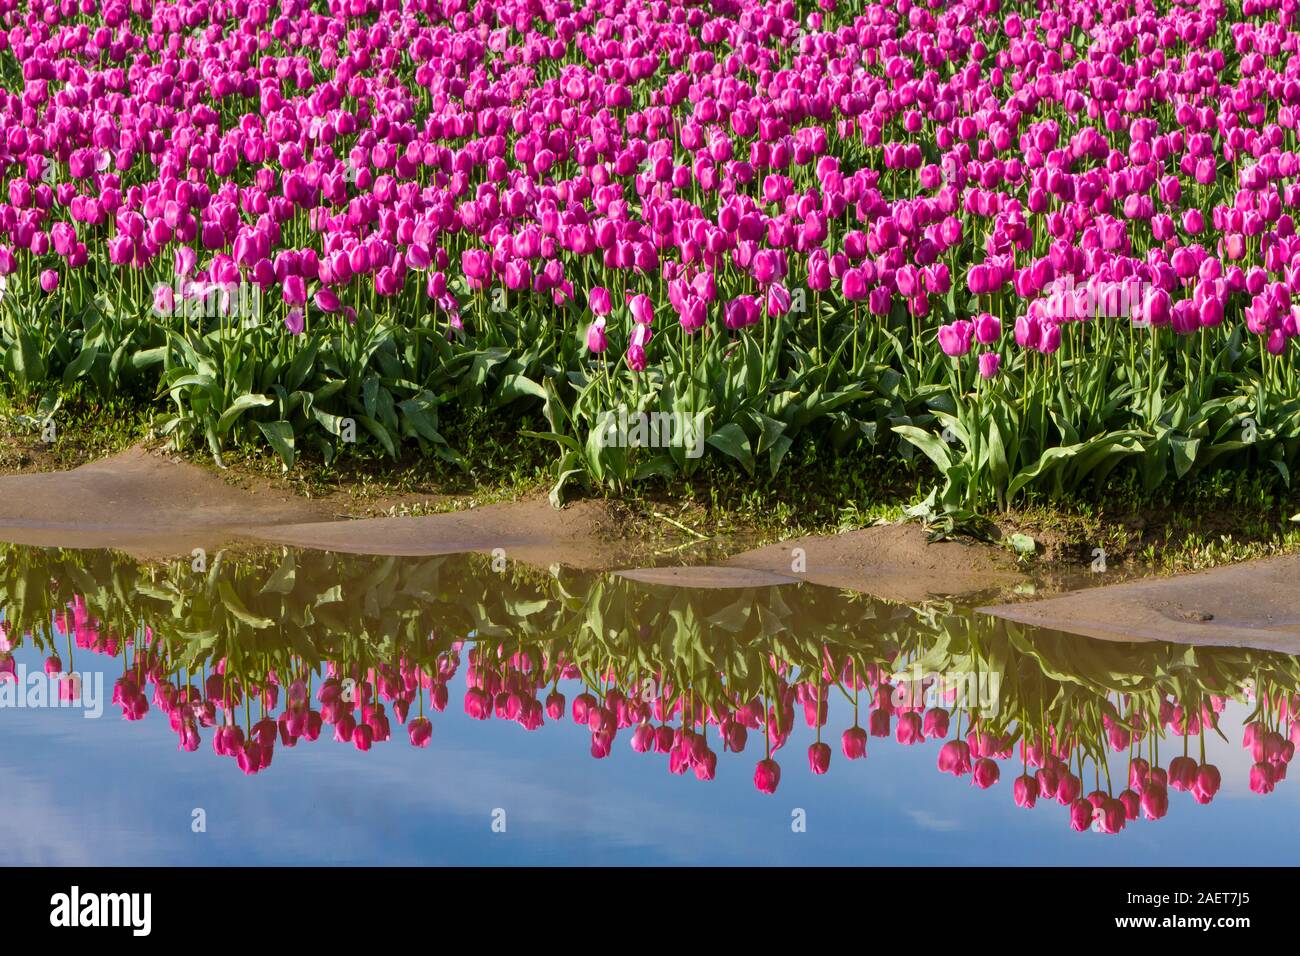 Champs de tulipes en fleurs dans la vallée de la Skagit, près de Mount Vernon, Washington, USA. Banque D'Images